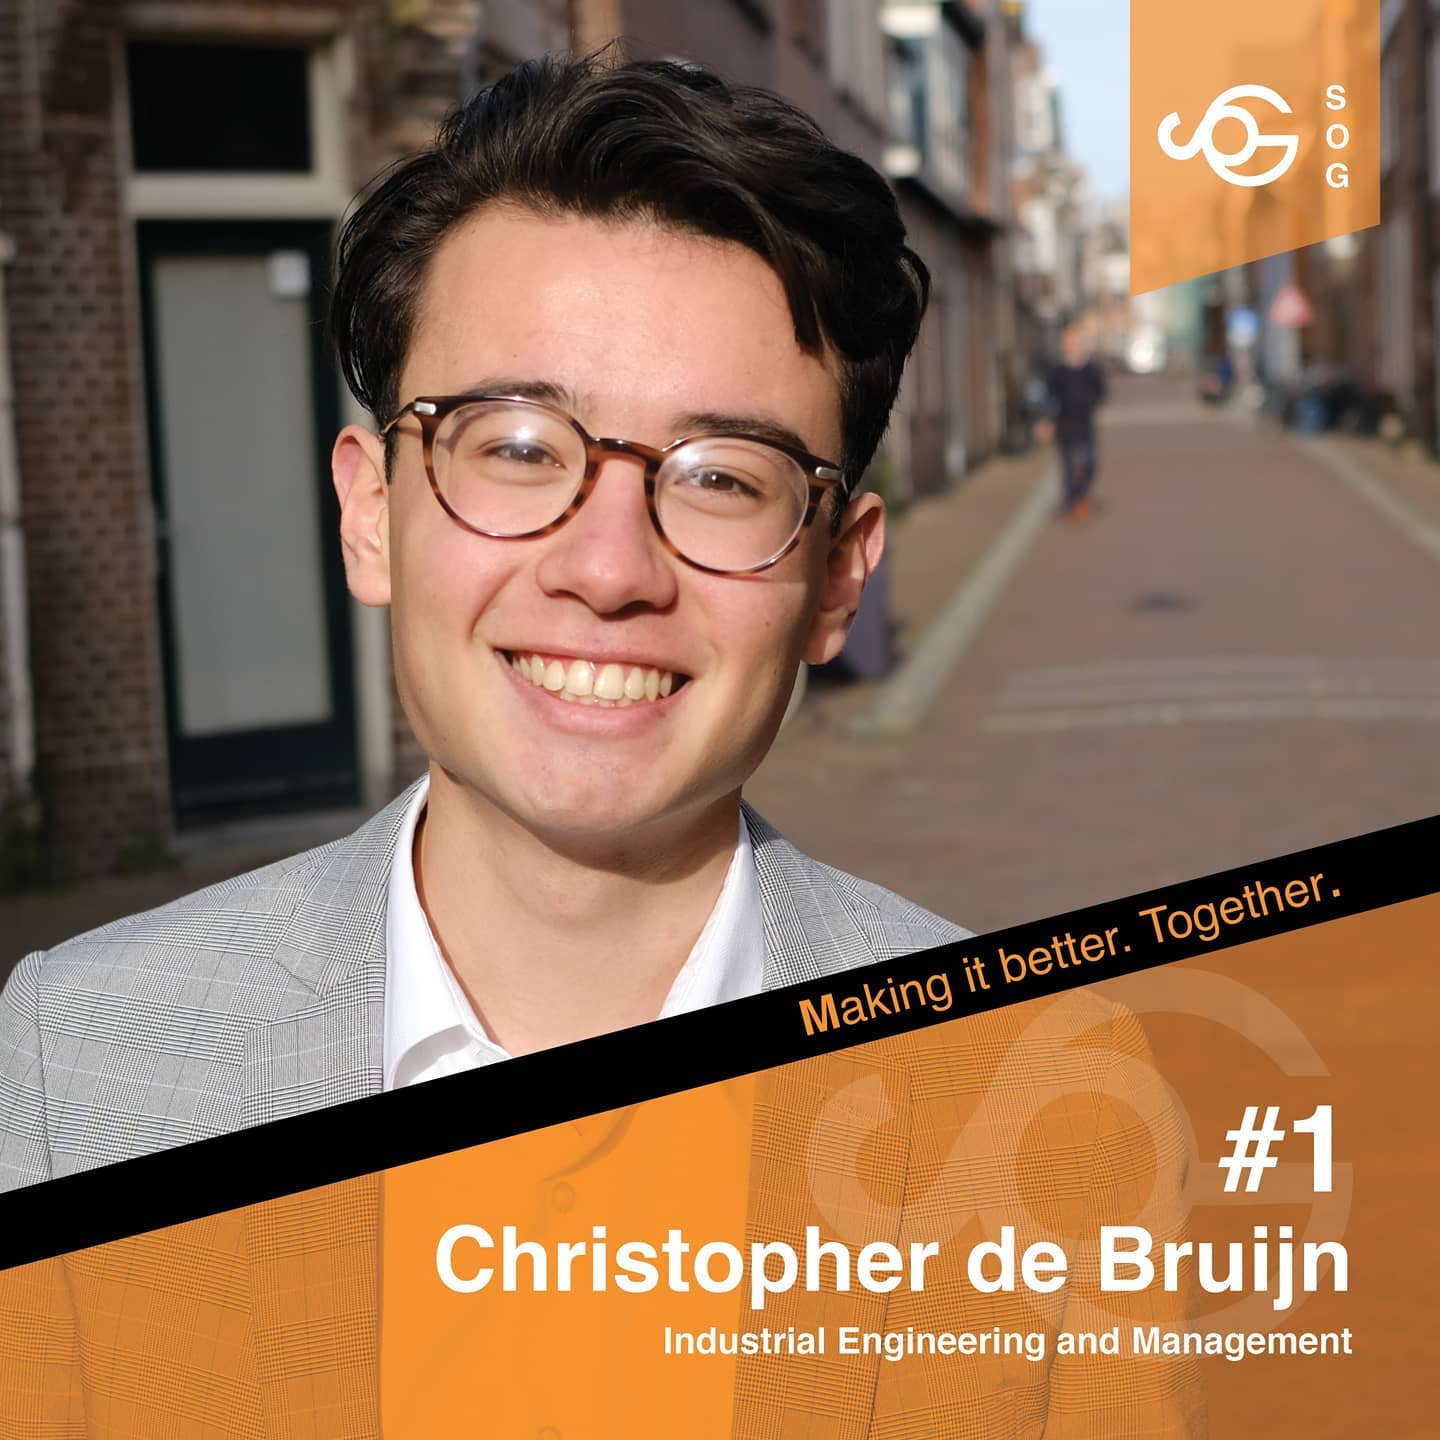 Christopher de Bruijn is the SOG's front runner this year